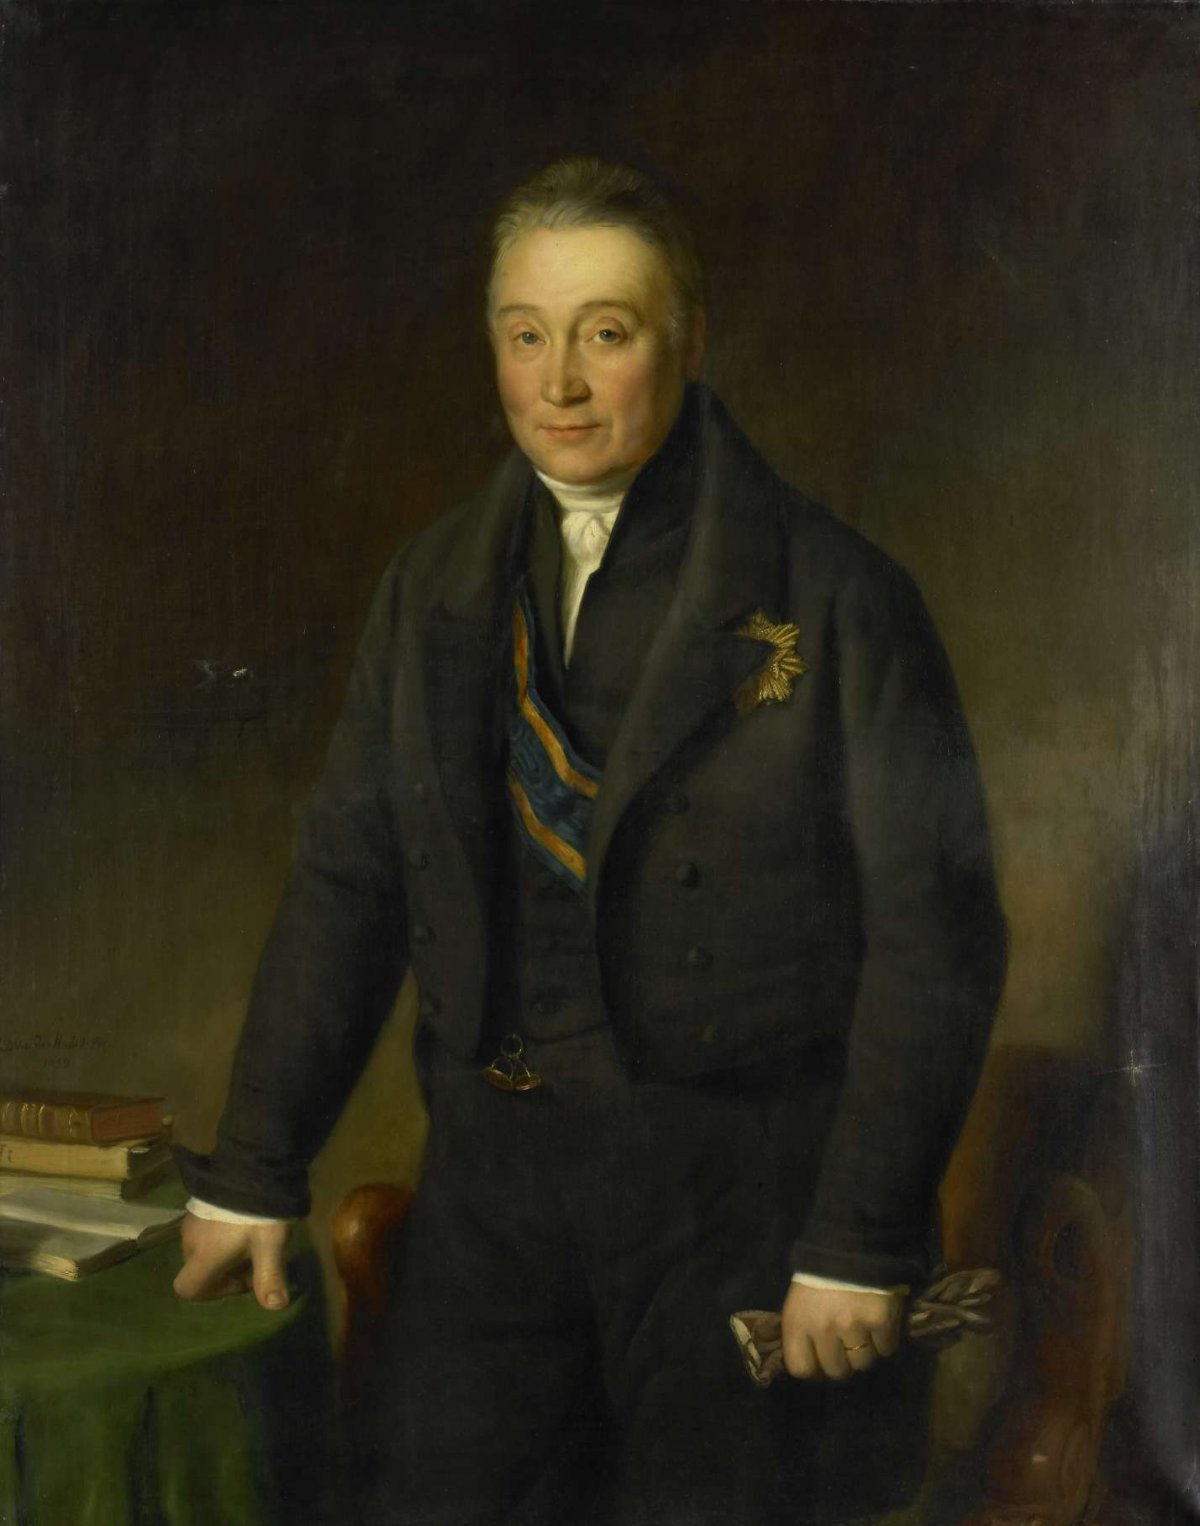 Adam-François-Jules-Armand (1771-1848), Count van der Duyn van Maasdam, Jean-Baptiste Van der Hulst, 1839